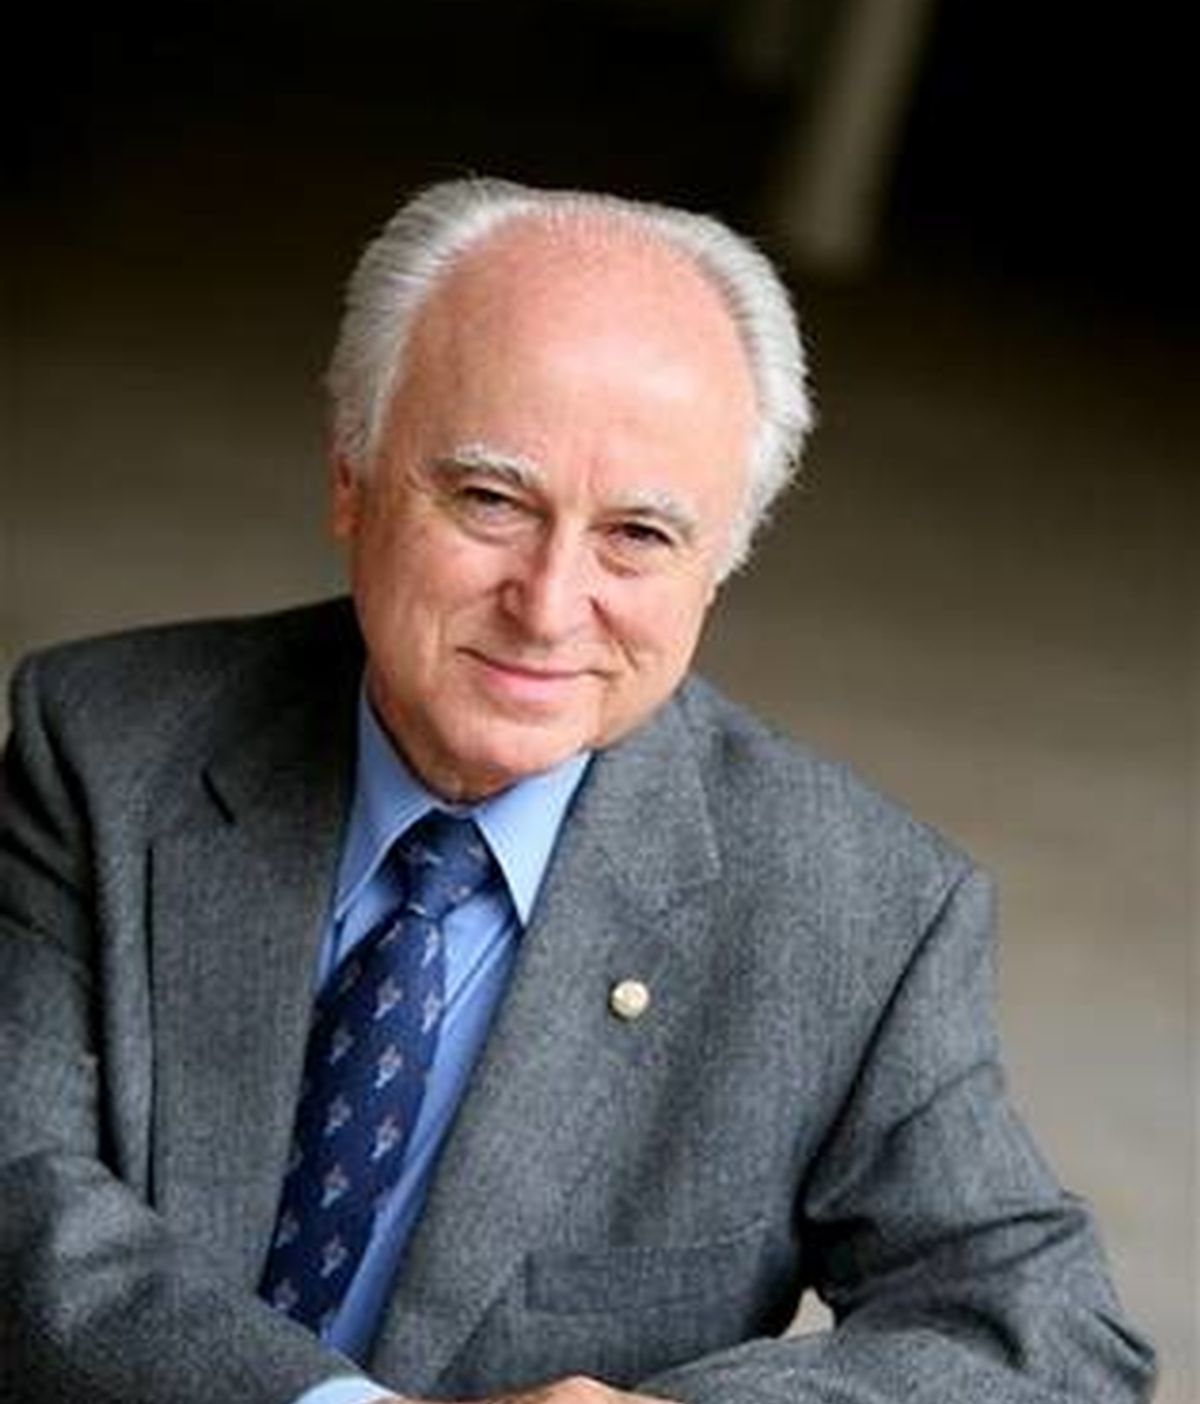 El exdiputado del PPdeG, José Manuel Castelao Bragaña